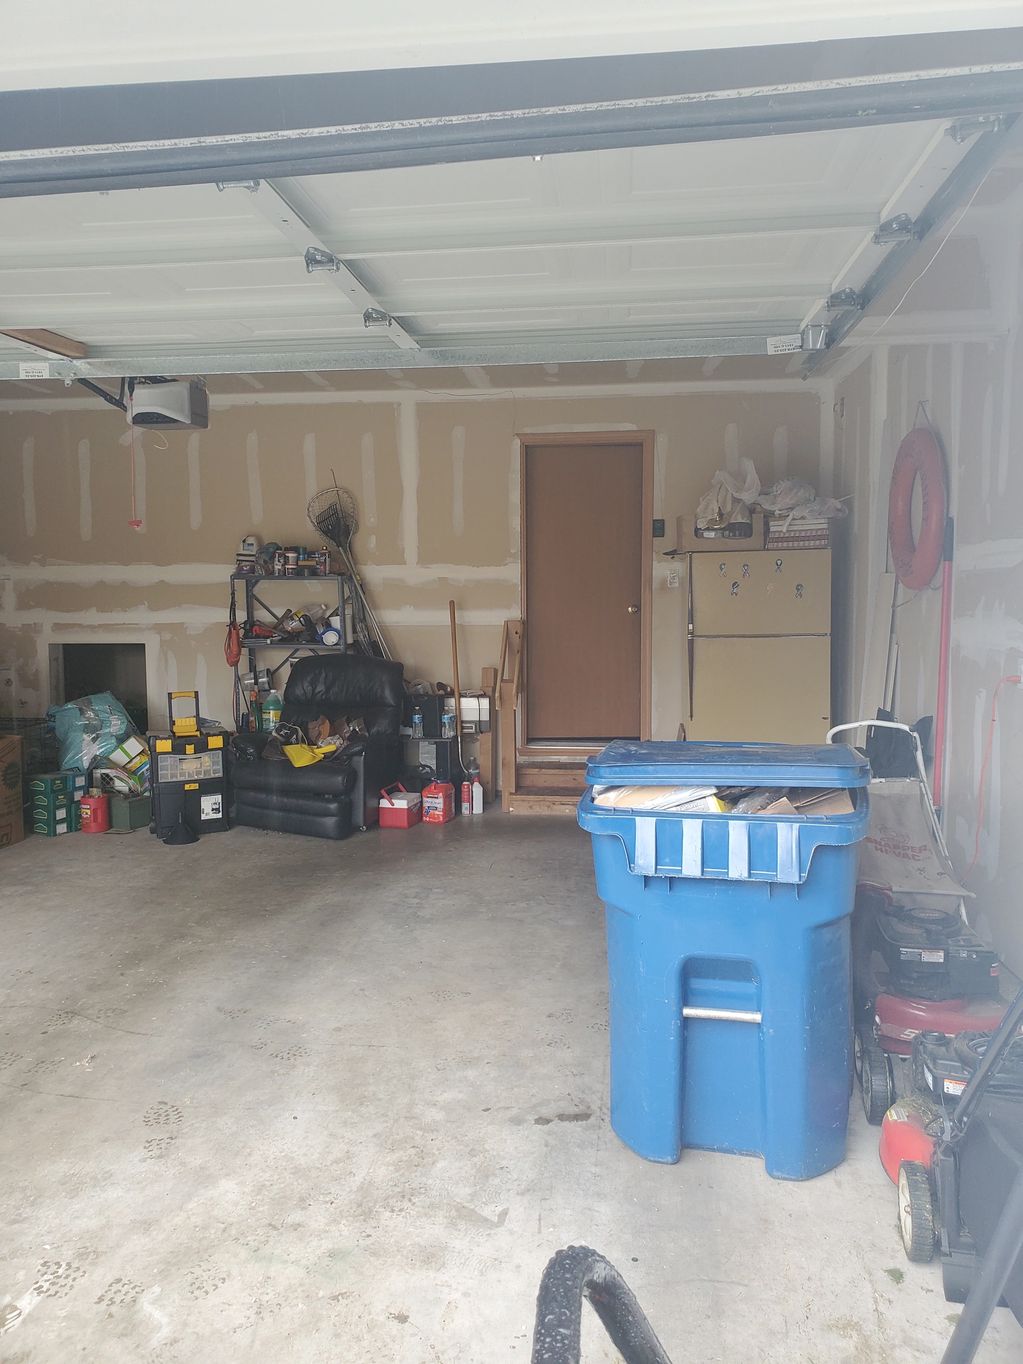 Garage Clean outs, We service Renton, Kent, Auburn, Covington, Maple Valley, Issaquah, Sea Tac.